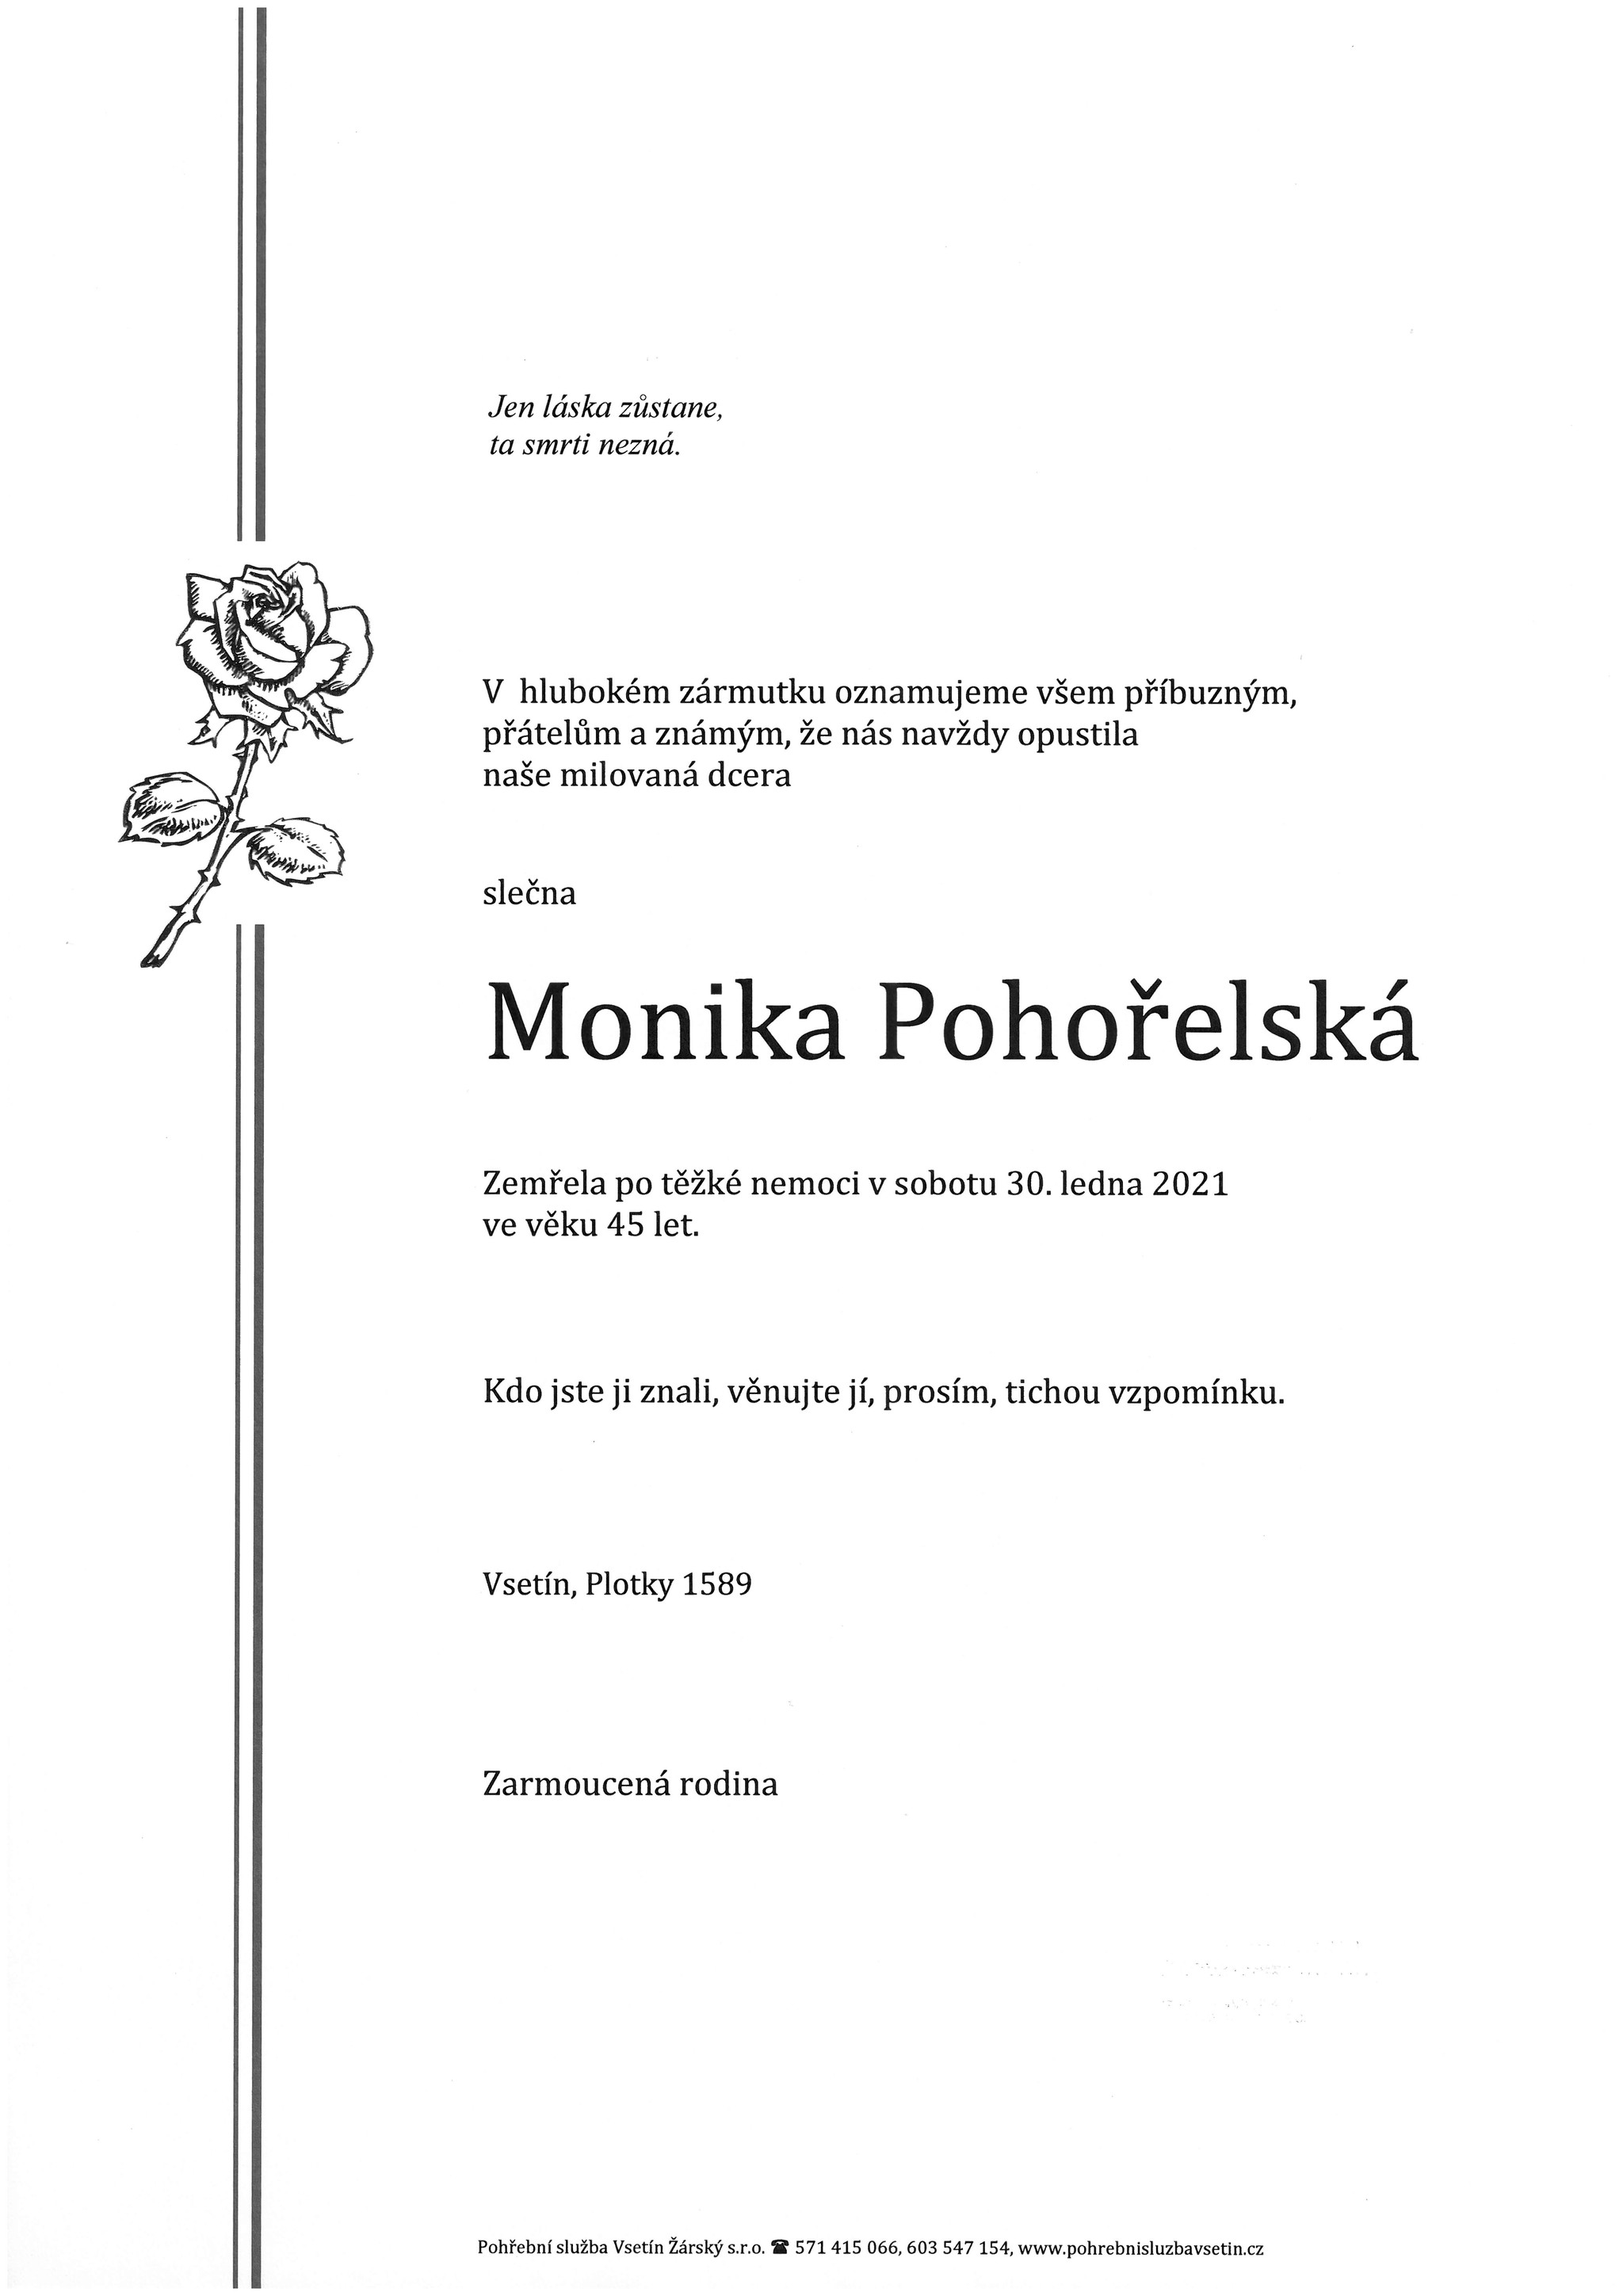 Monika Pohořelská